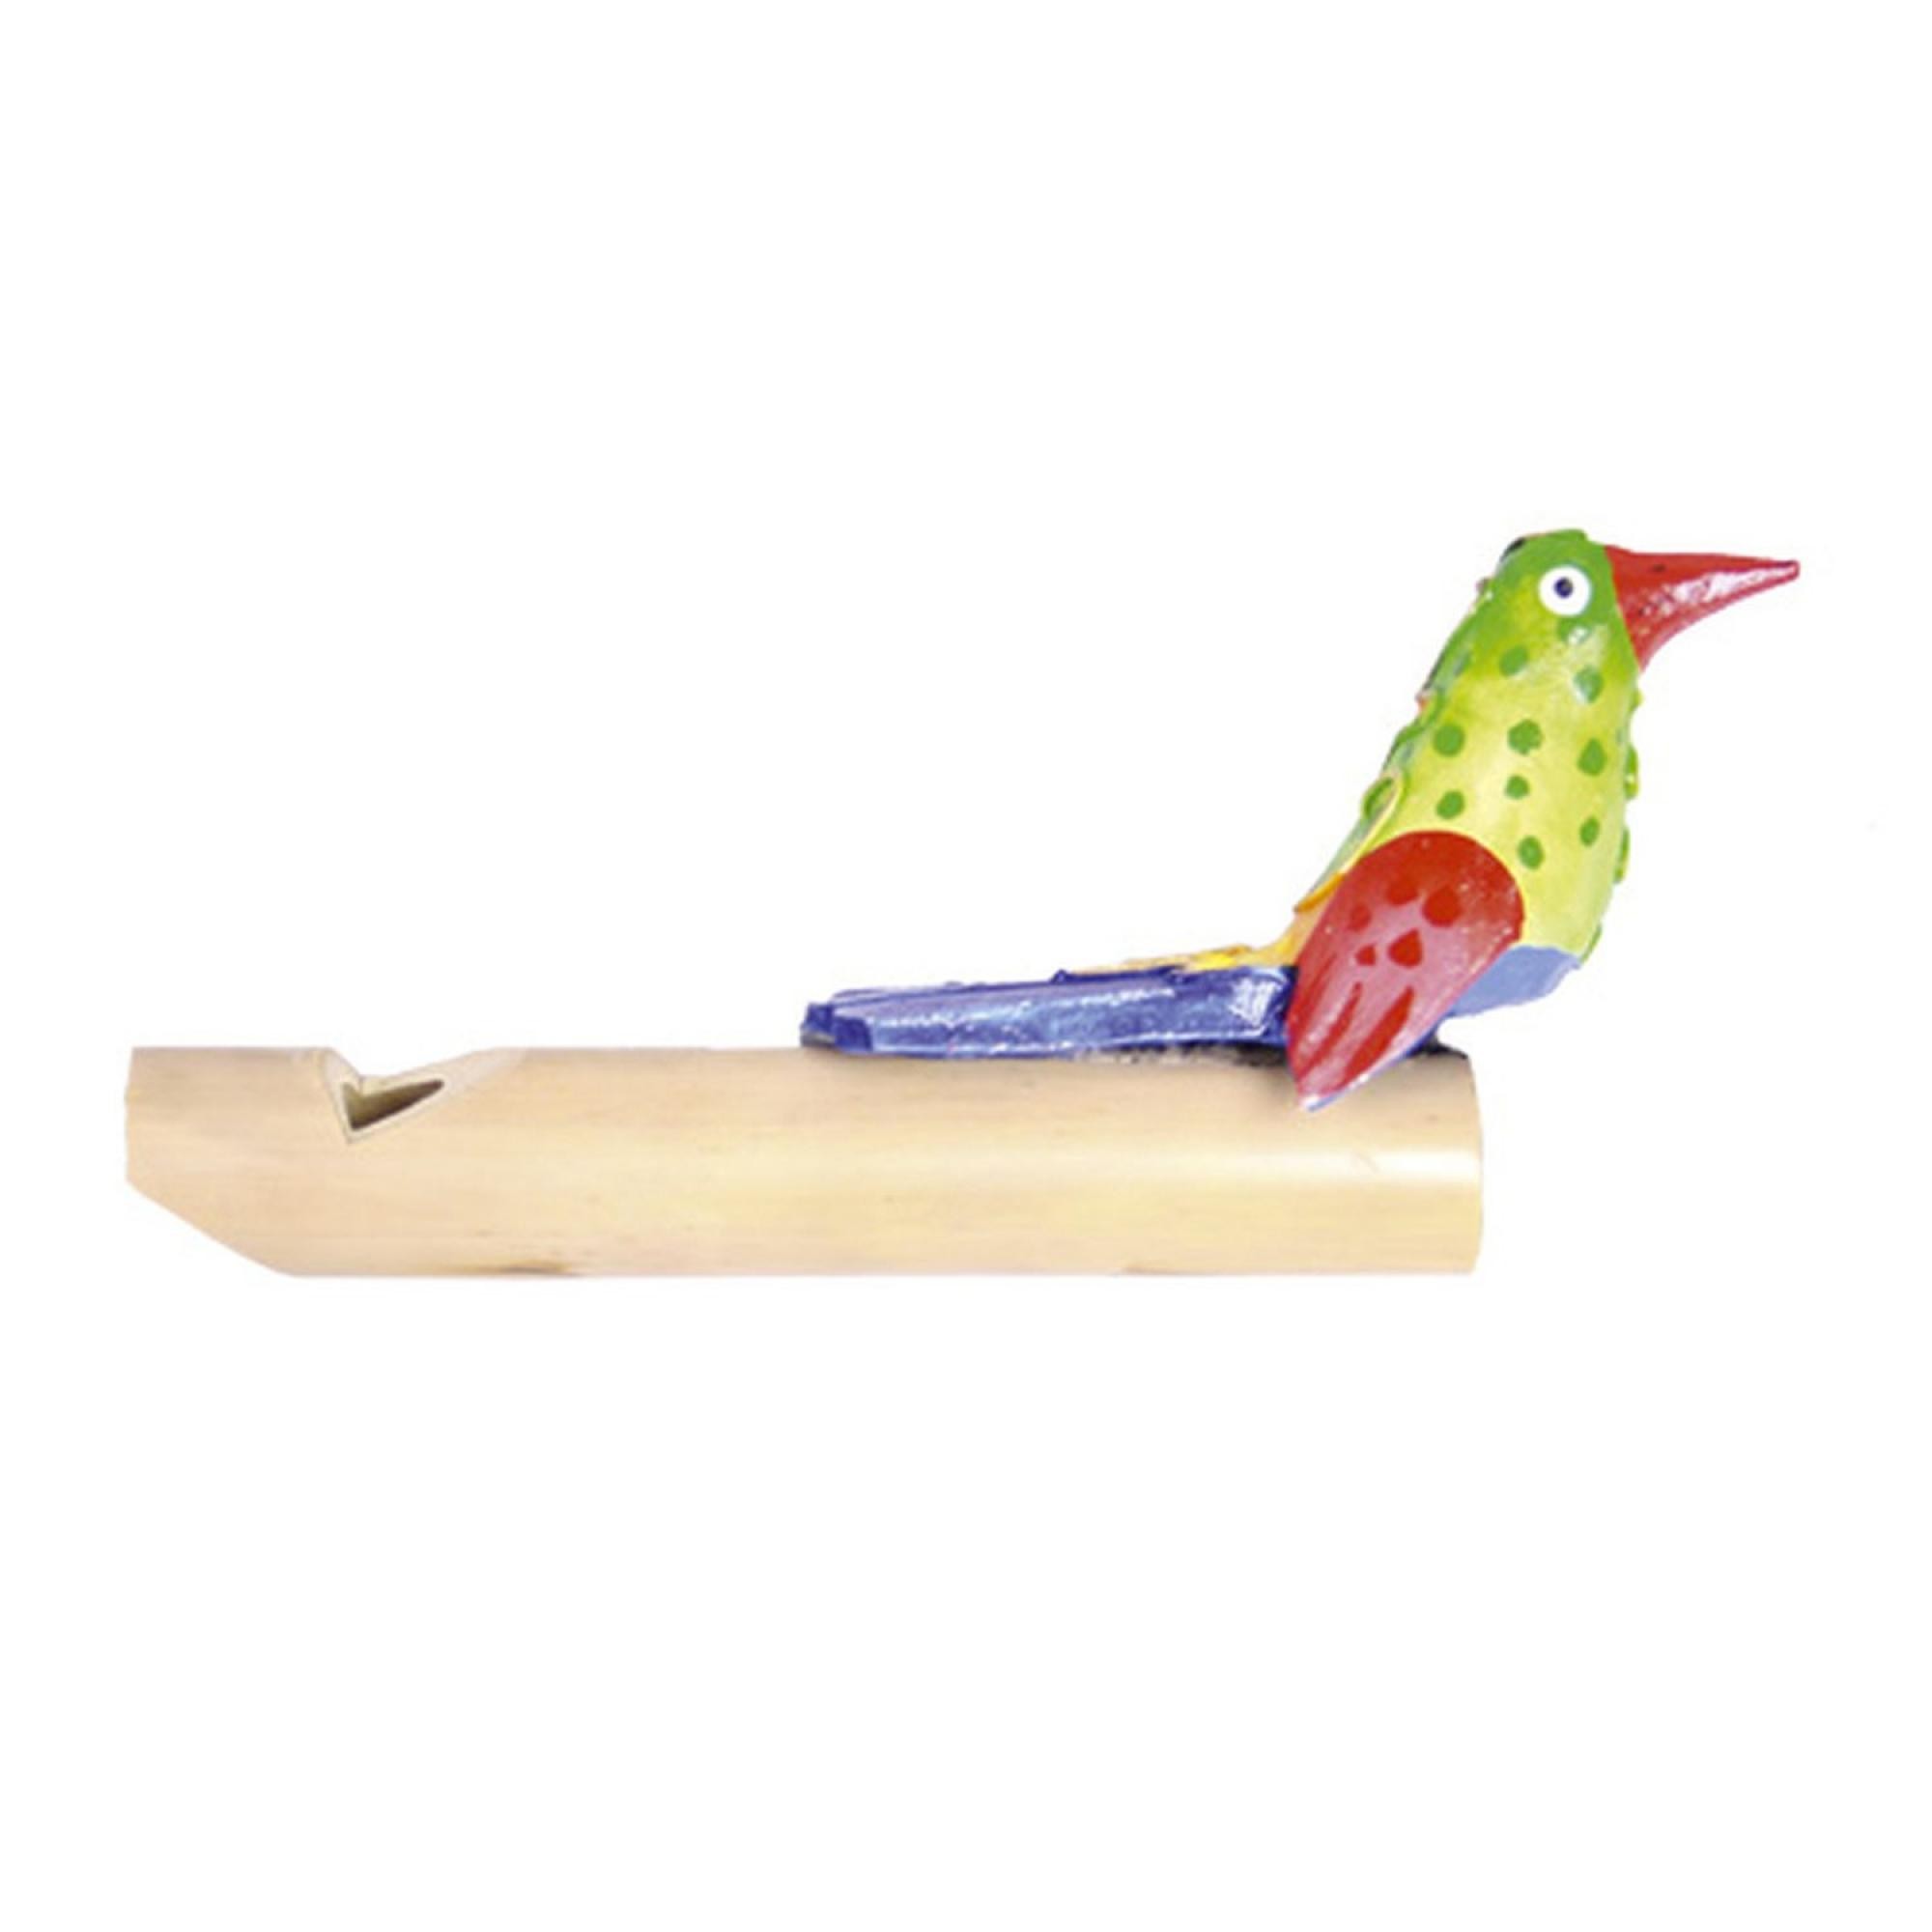 Kuckuckspfeife mit Vogel | Musikinstrument